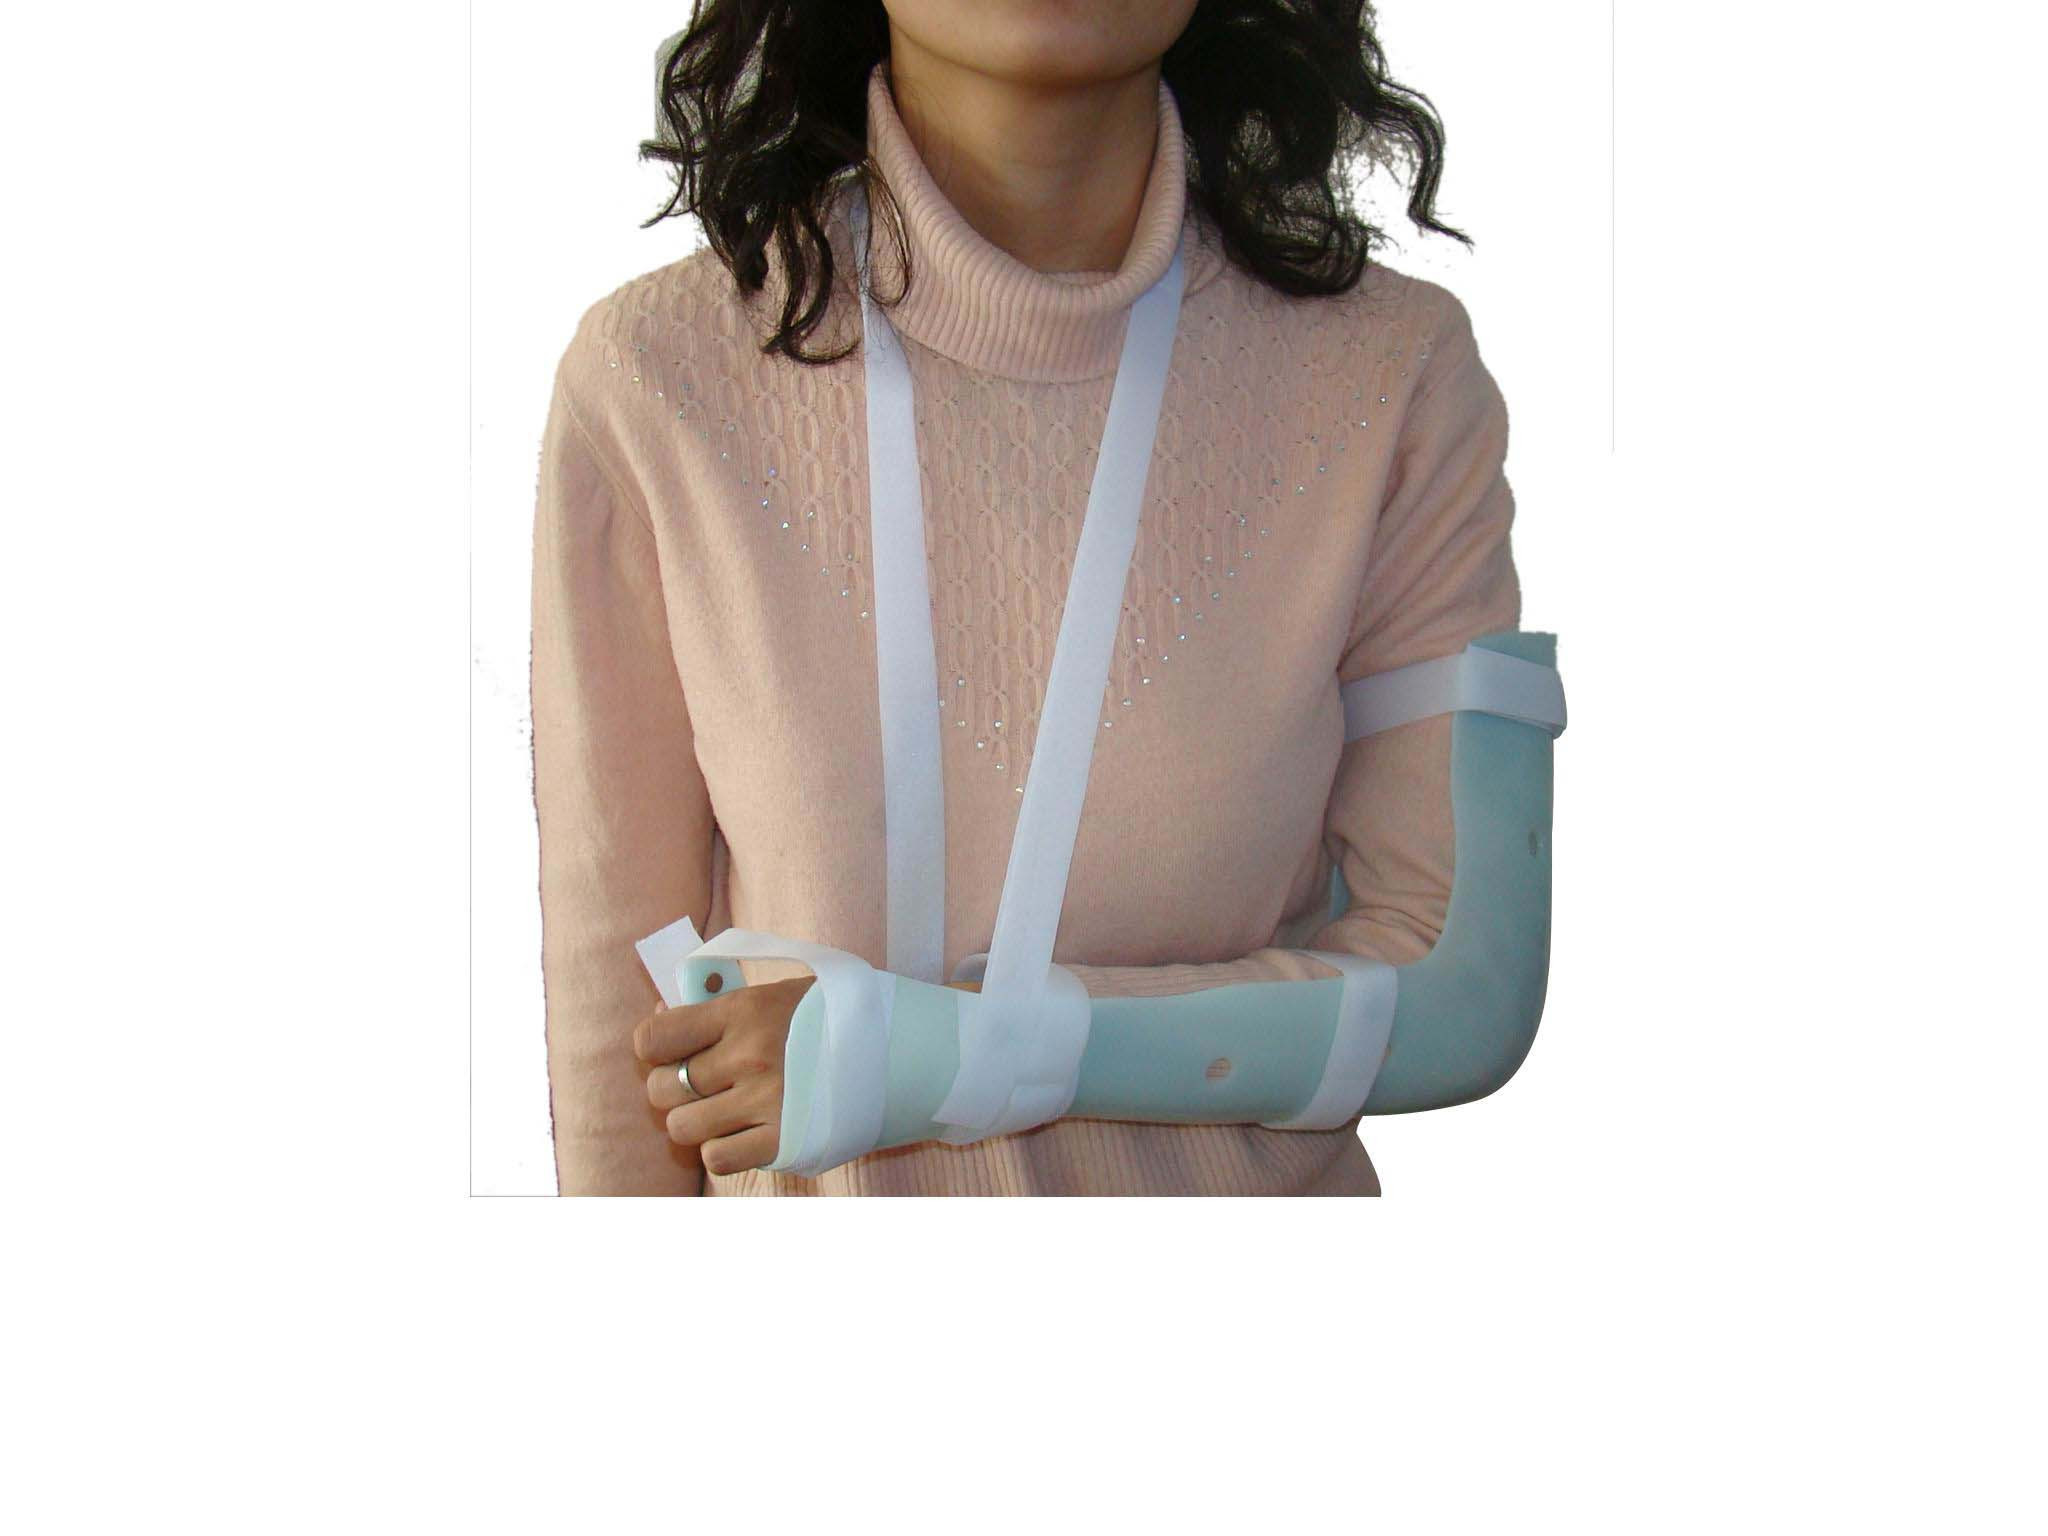 上臂固定支具 塑料固定 肘部固定支具 前臂固定支具